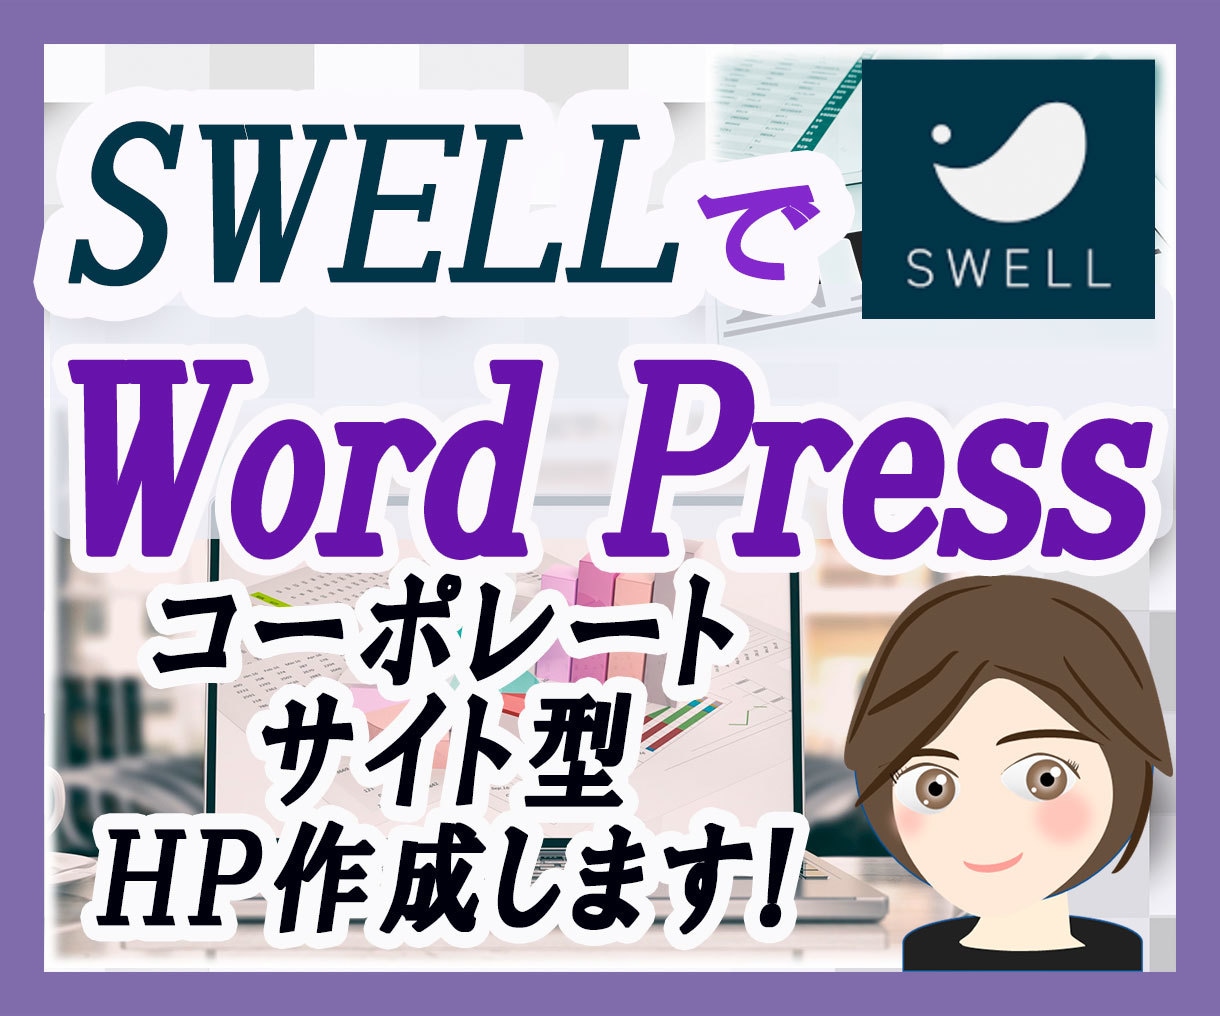 SWELLでコーポレートサイト型HPを作成します 個人用・商用にWordpressHPをお役立てください。 イメージ1